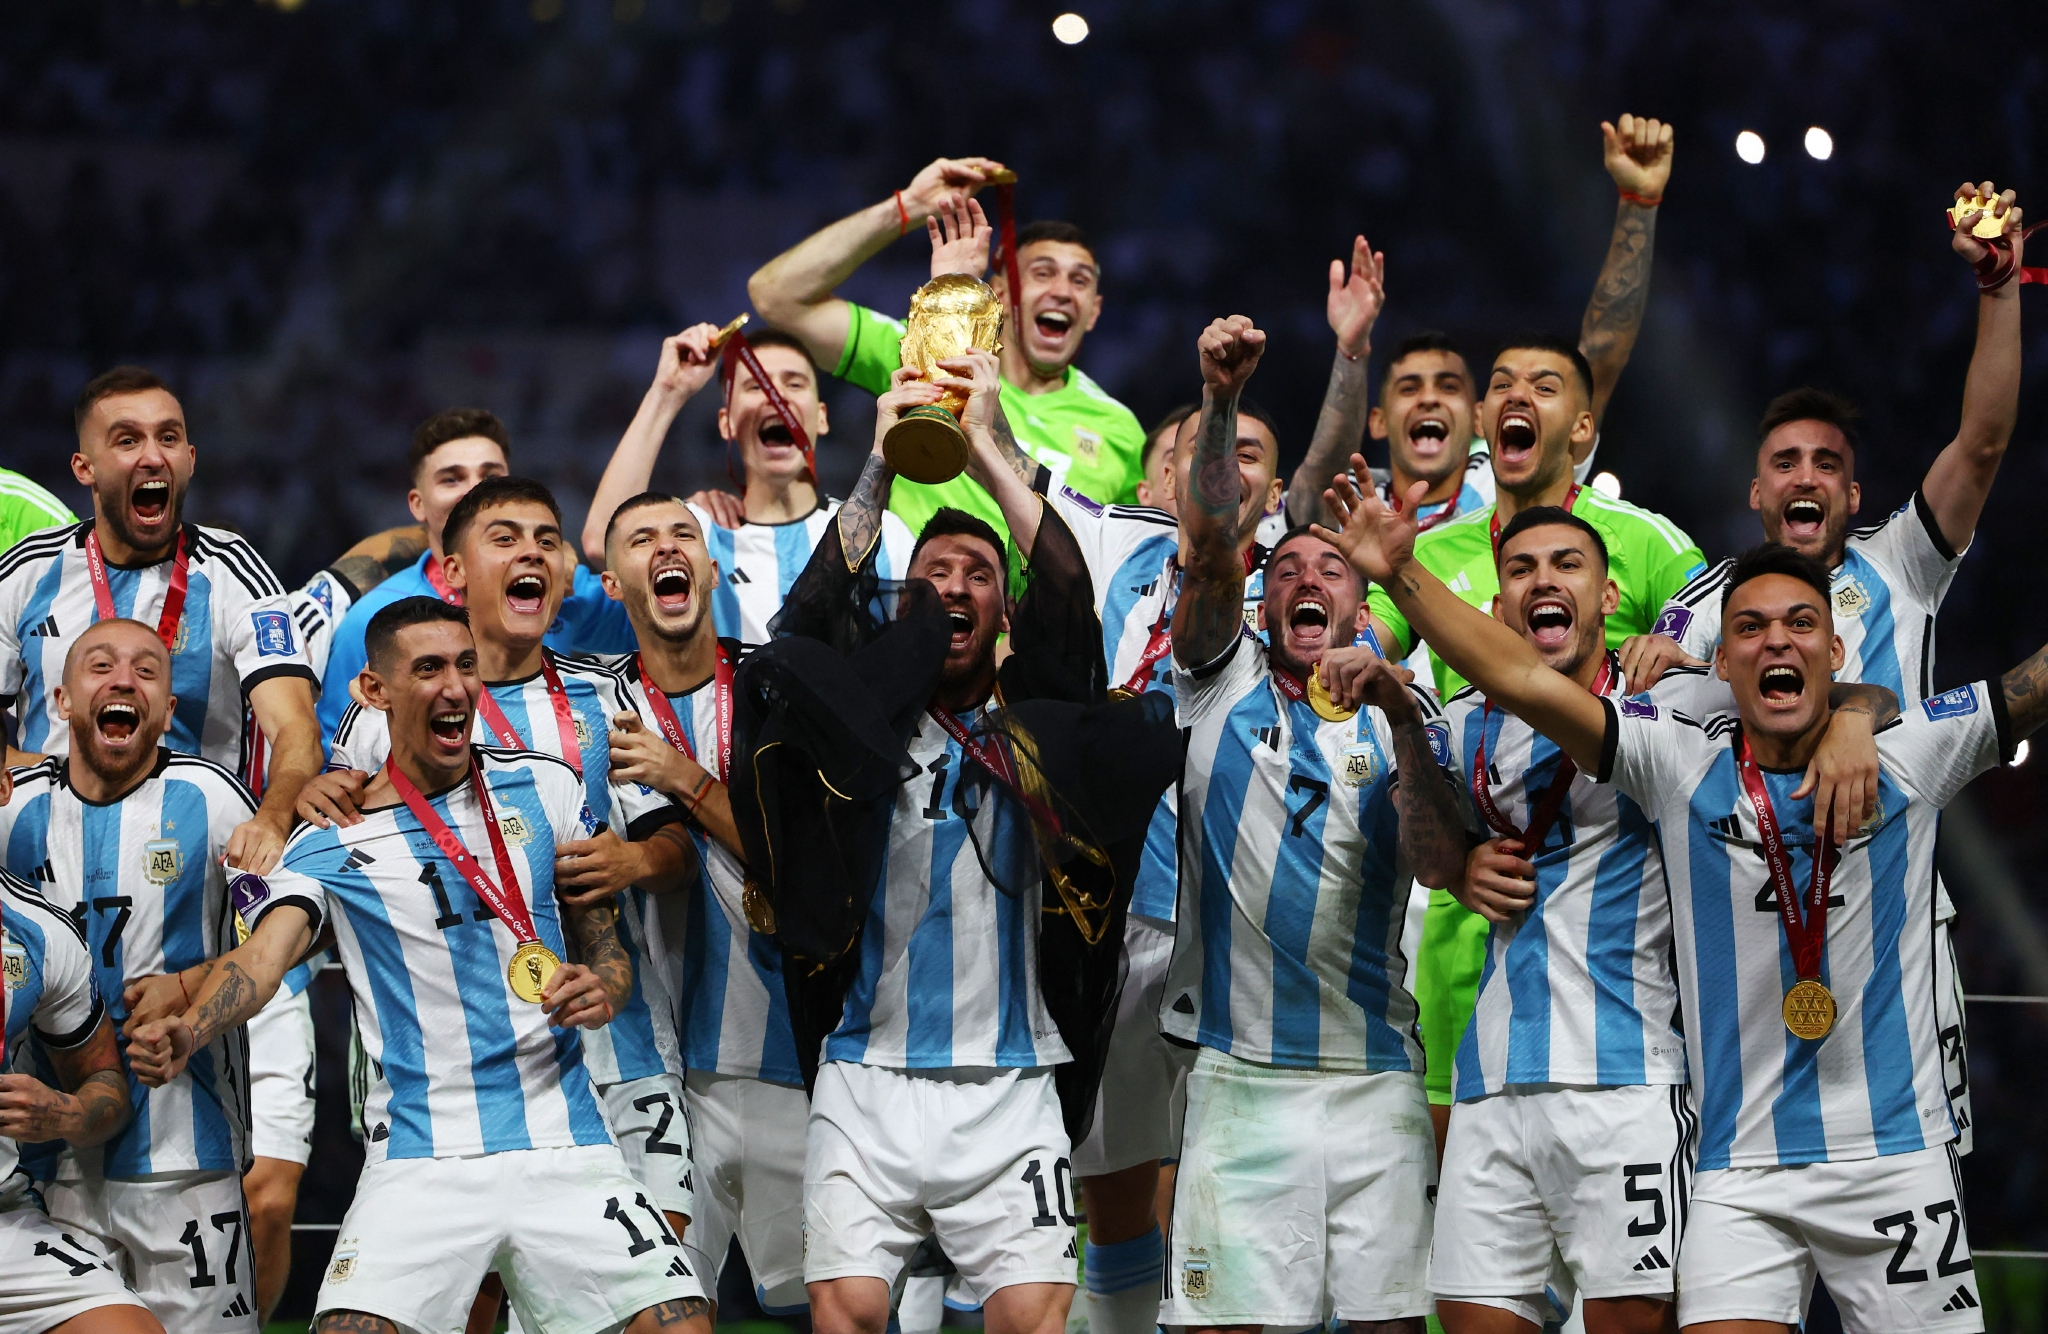 法国人发起请愿重赛 阿根廷媒体重新播放了一次决赛